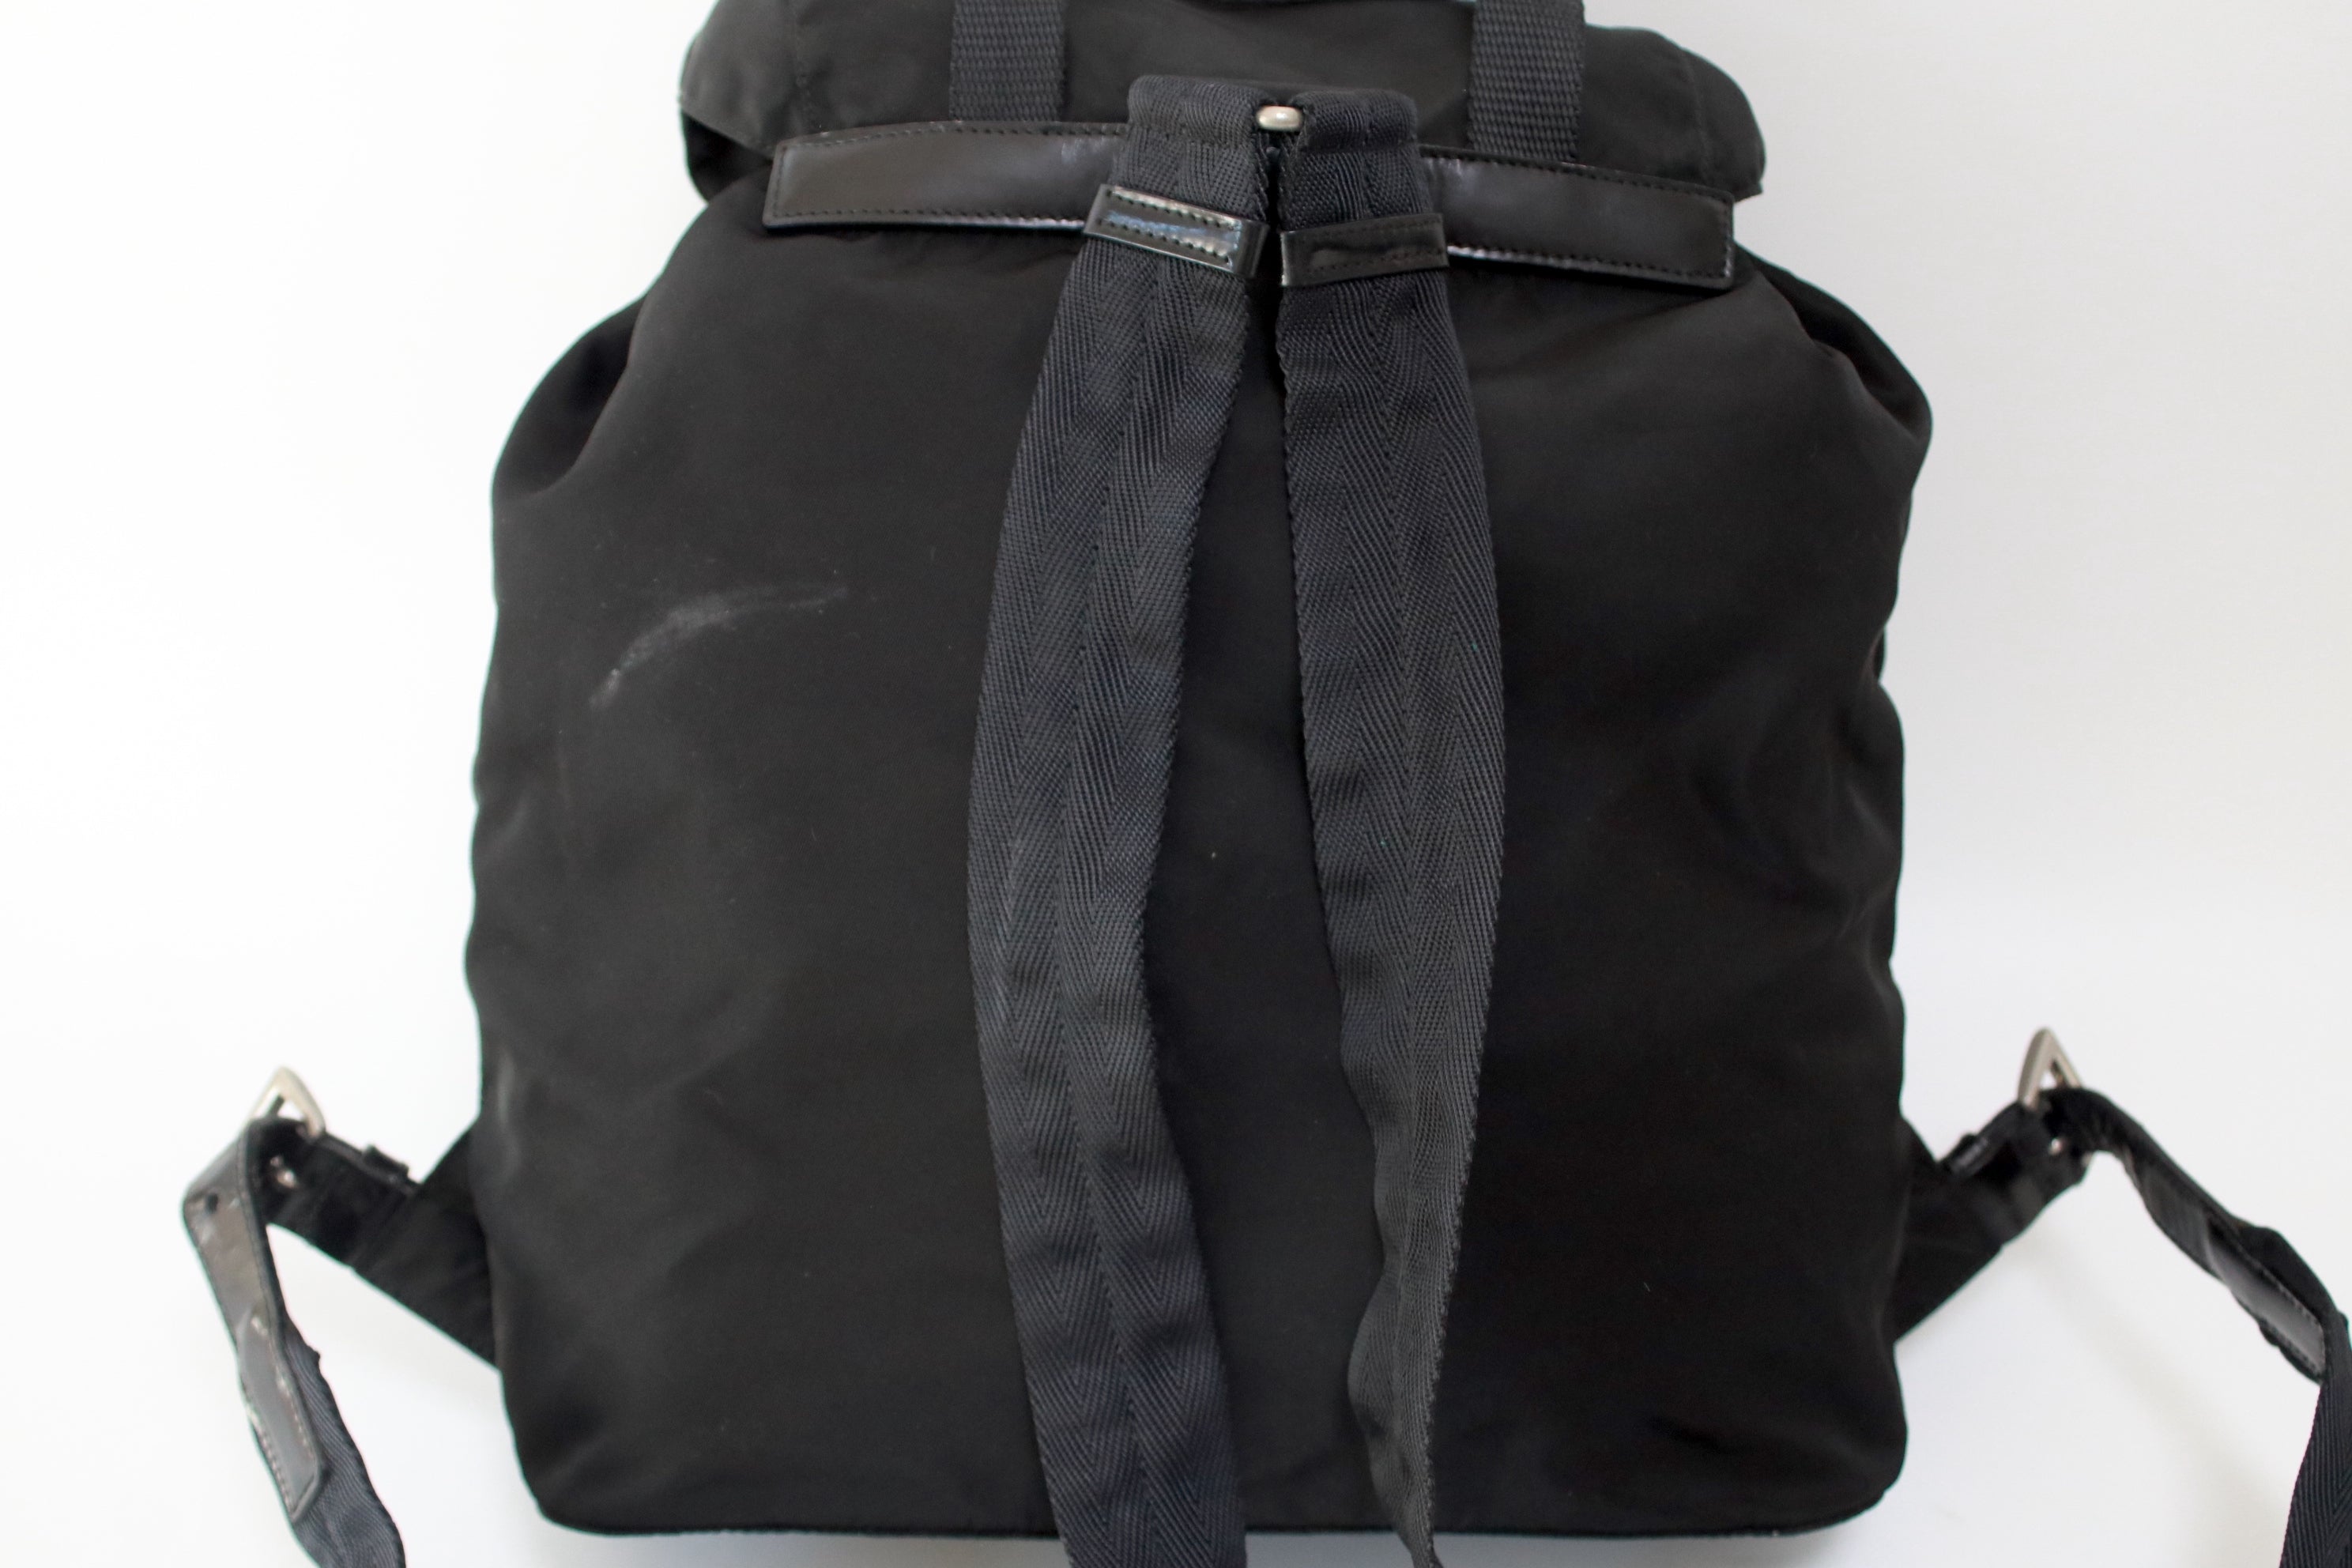 Prada Nylon Backpack Used (6126)